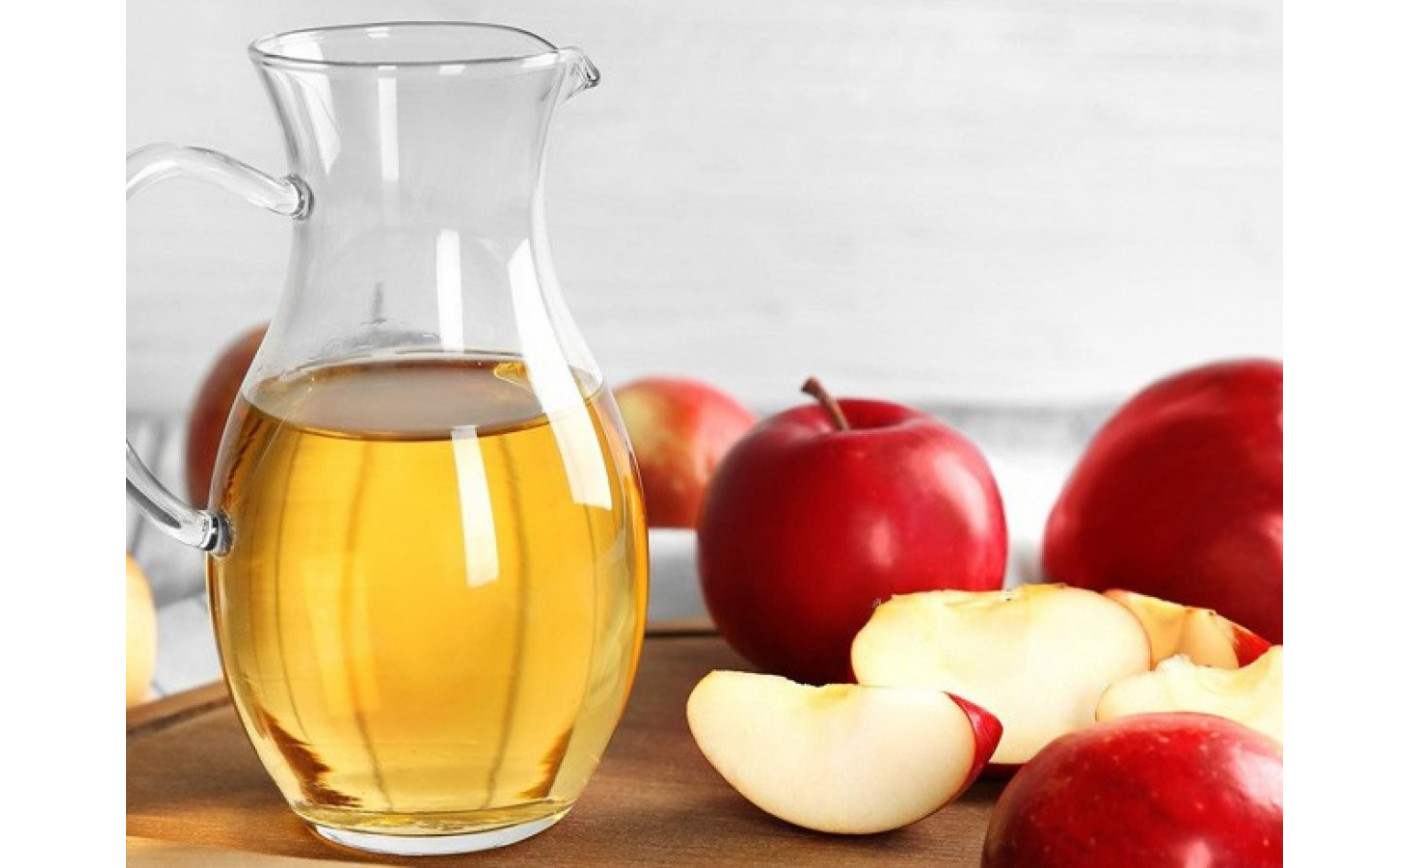 Aceto di mele: proprietà e virtù che non sapevi esistessero